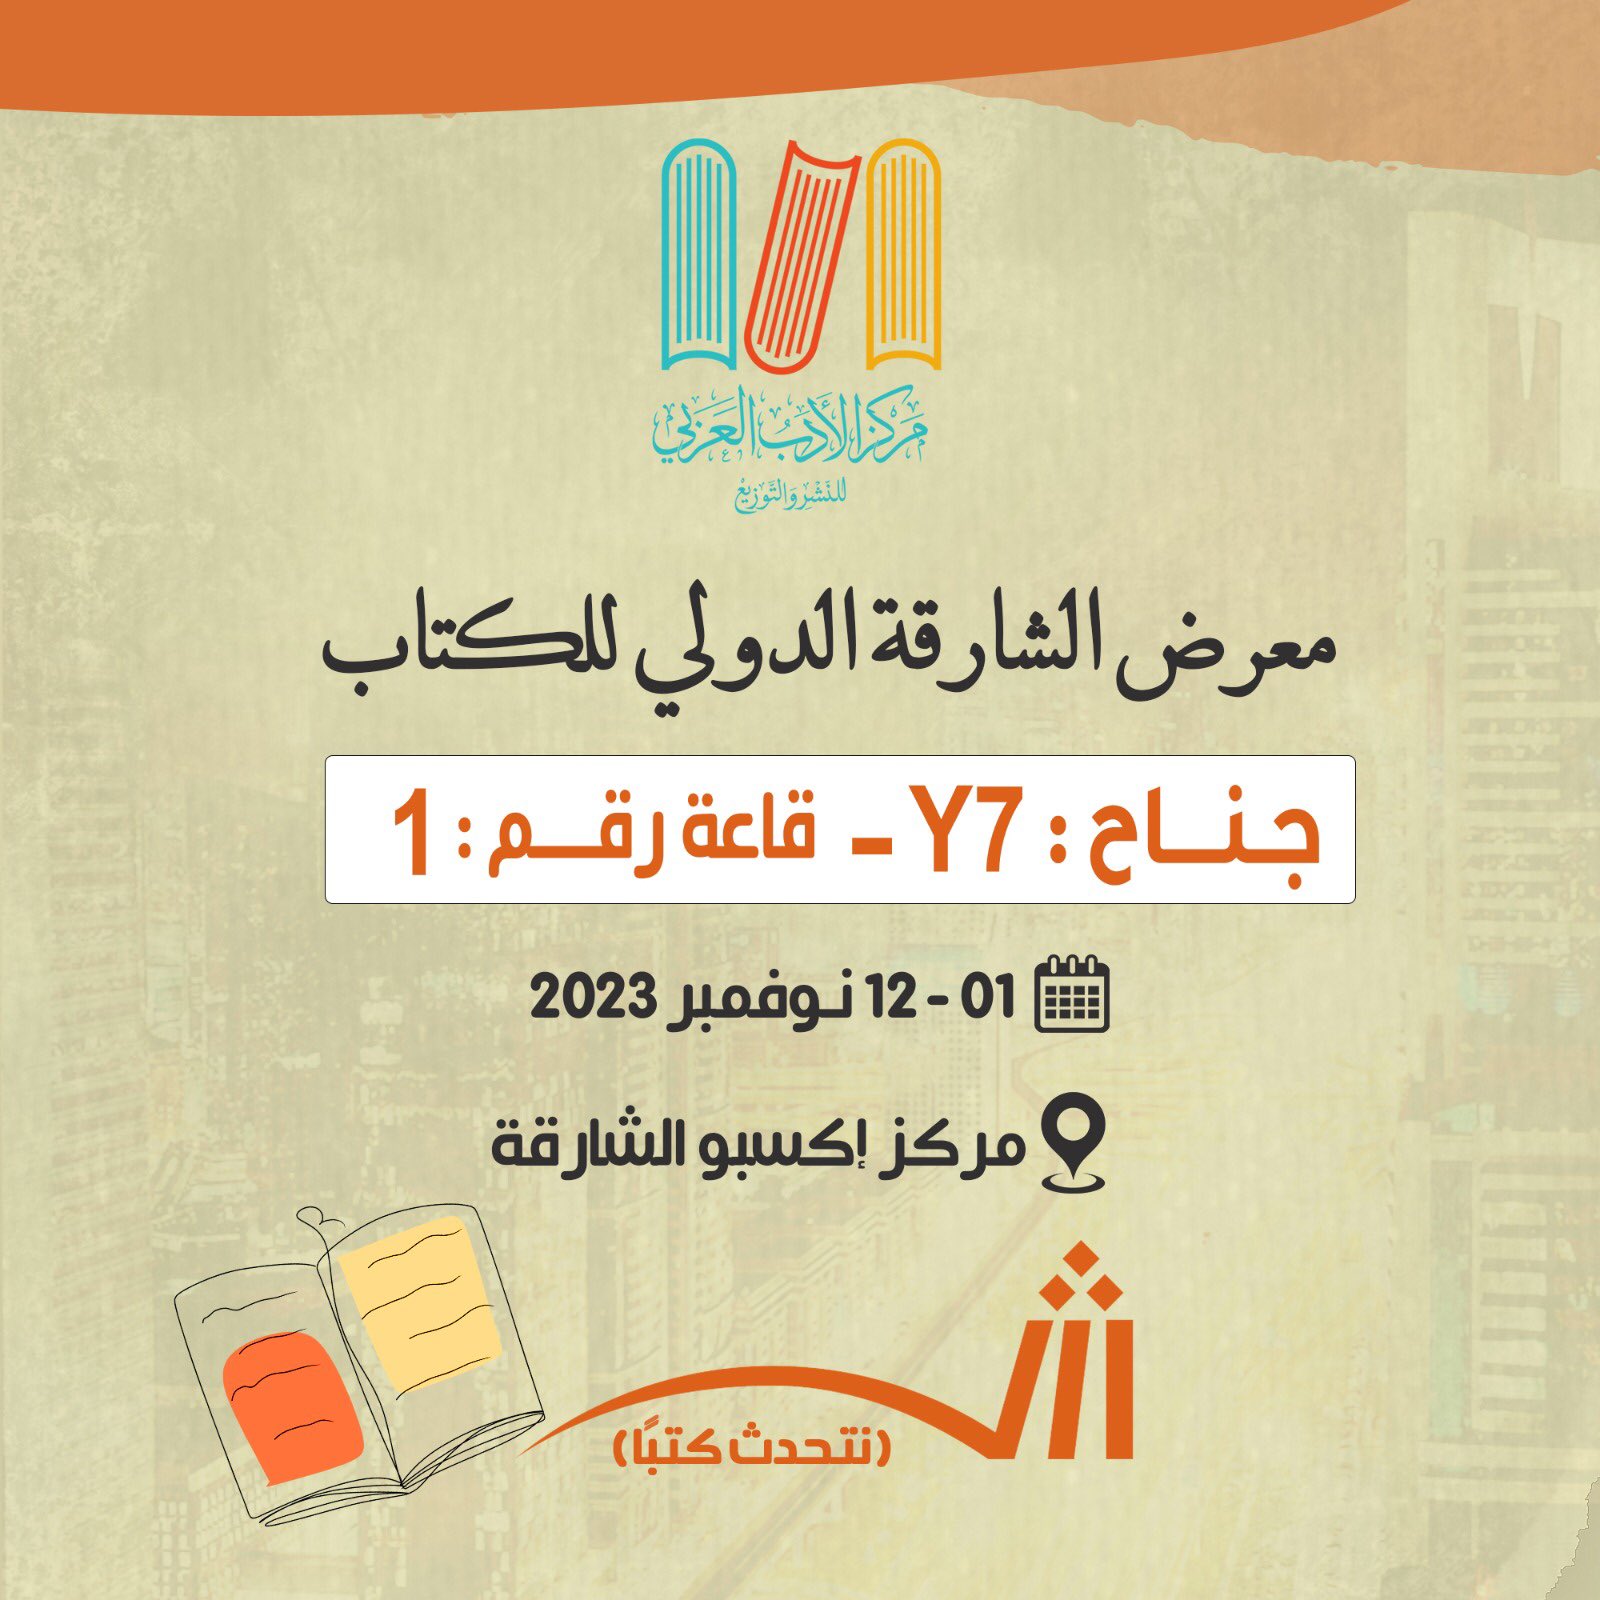 بأحدث اصداراته الأدب العربي يشارك في معرض الشارقة للكتاب 2023 أخبار الأدب